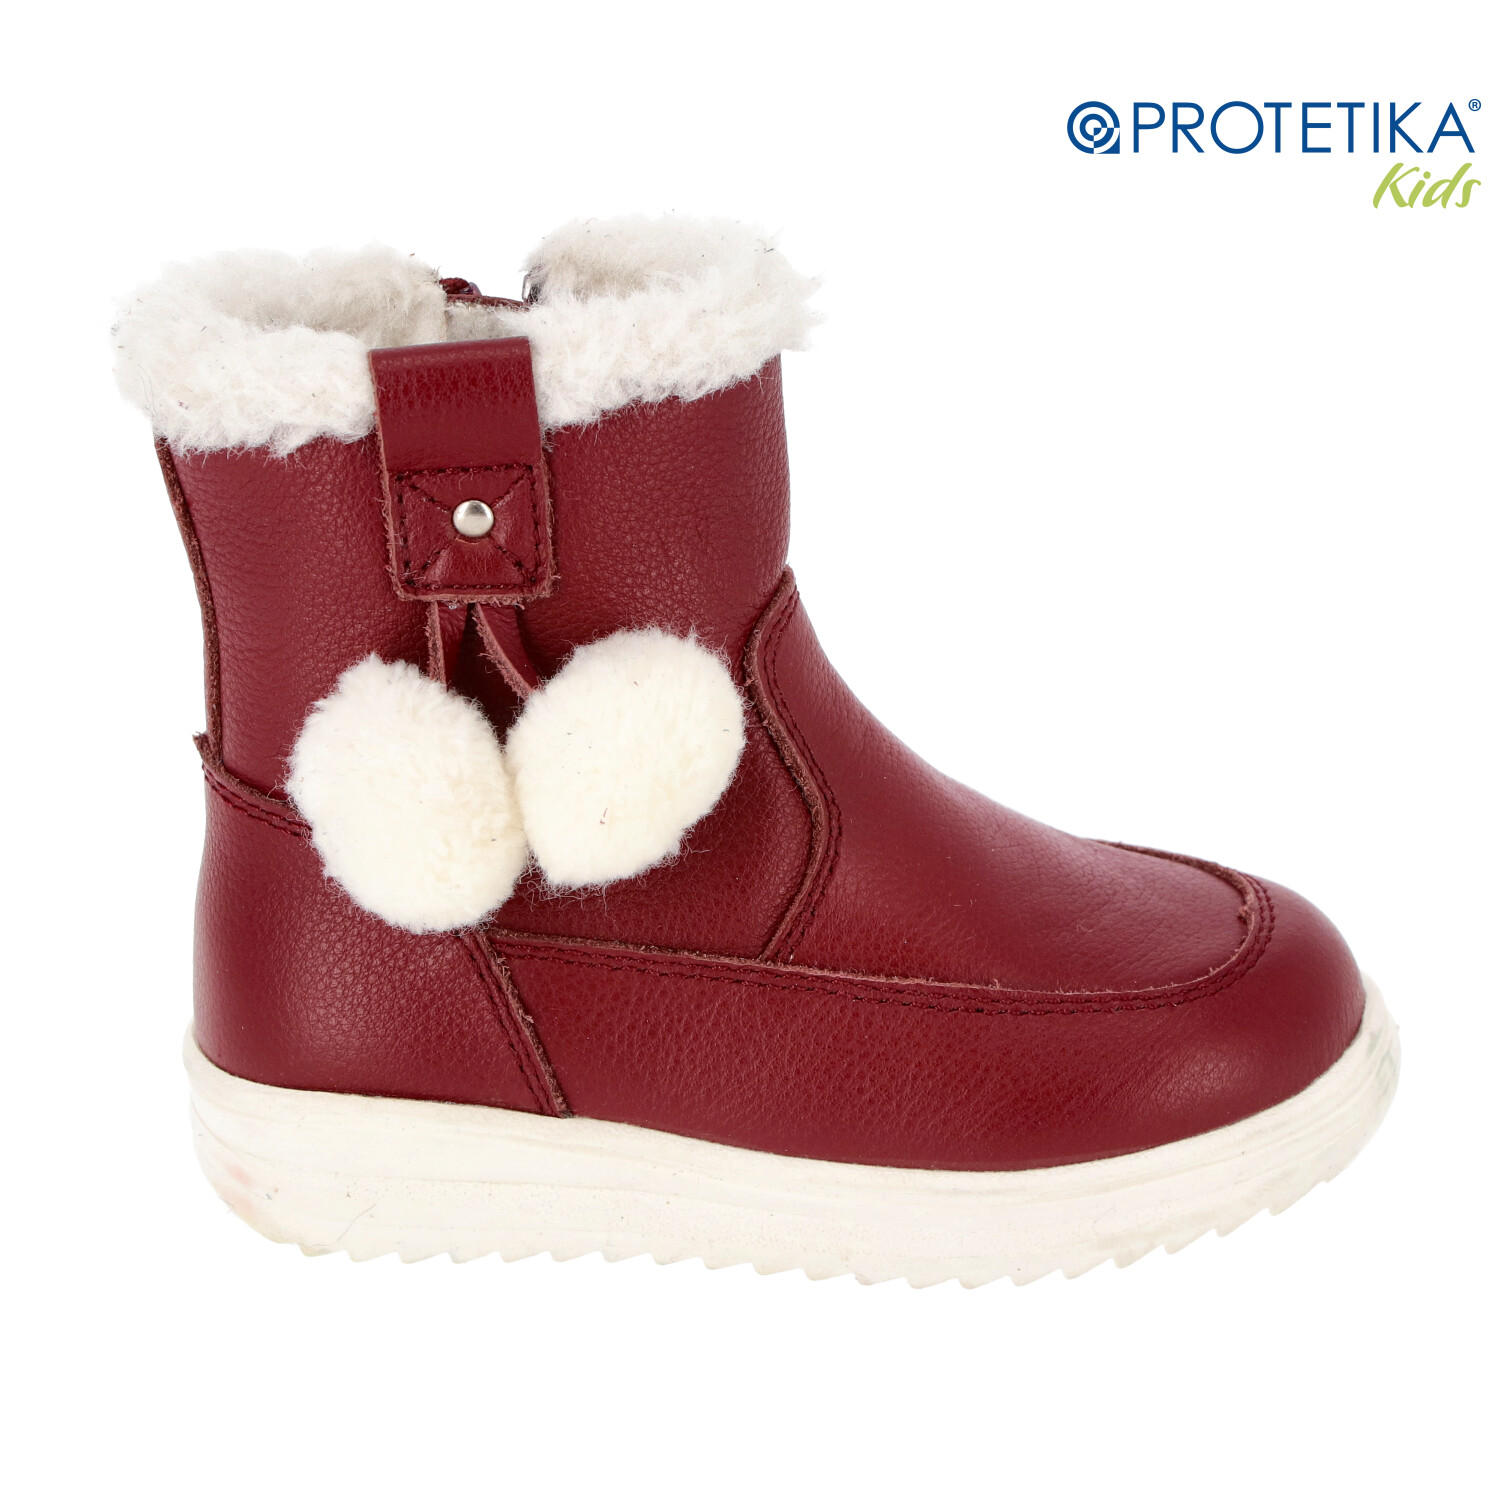 Protetika - zimné topánky EDANA bordo - zateplené kožušinkou